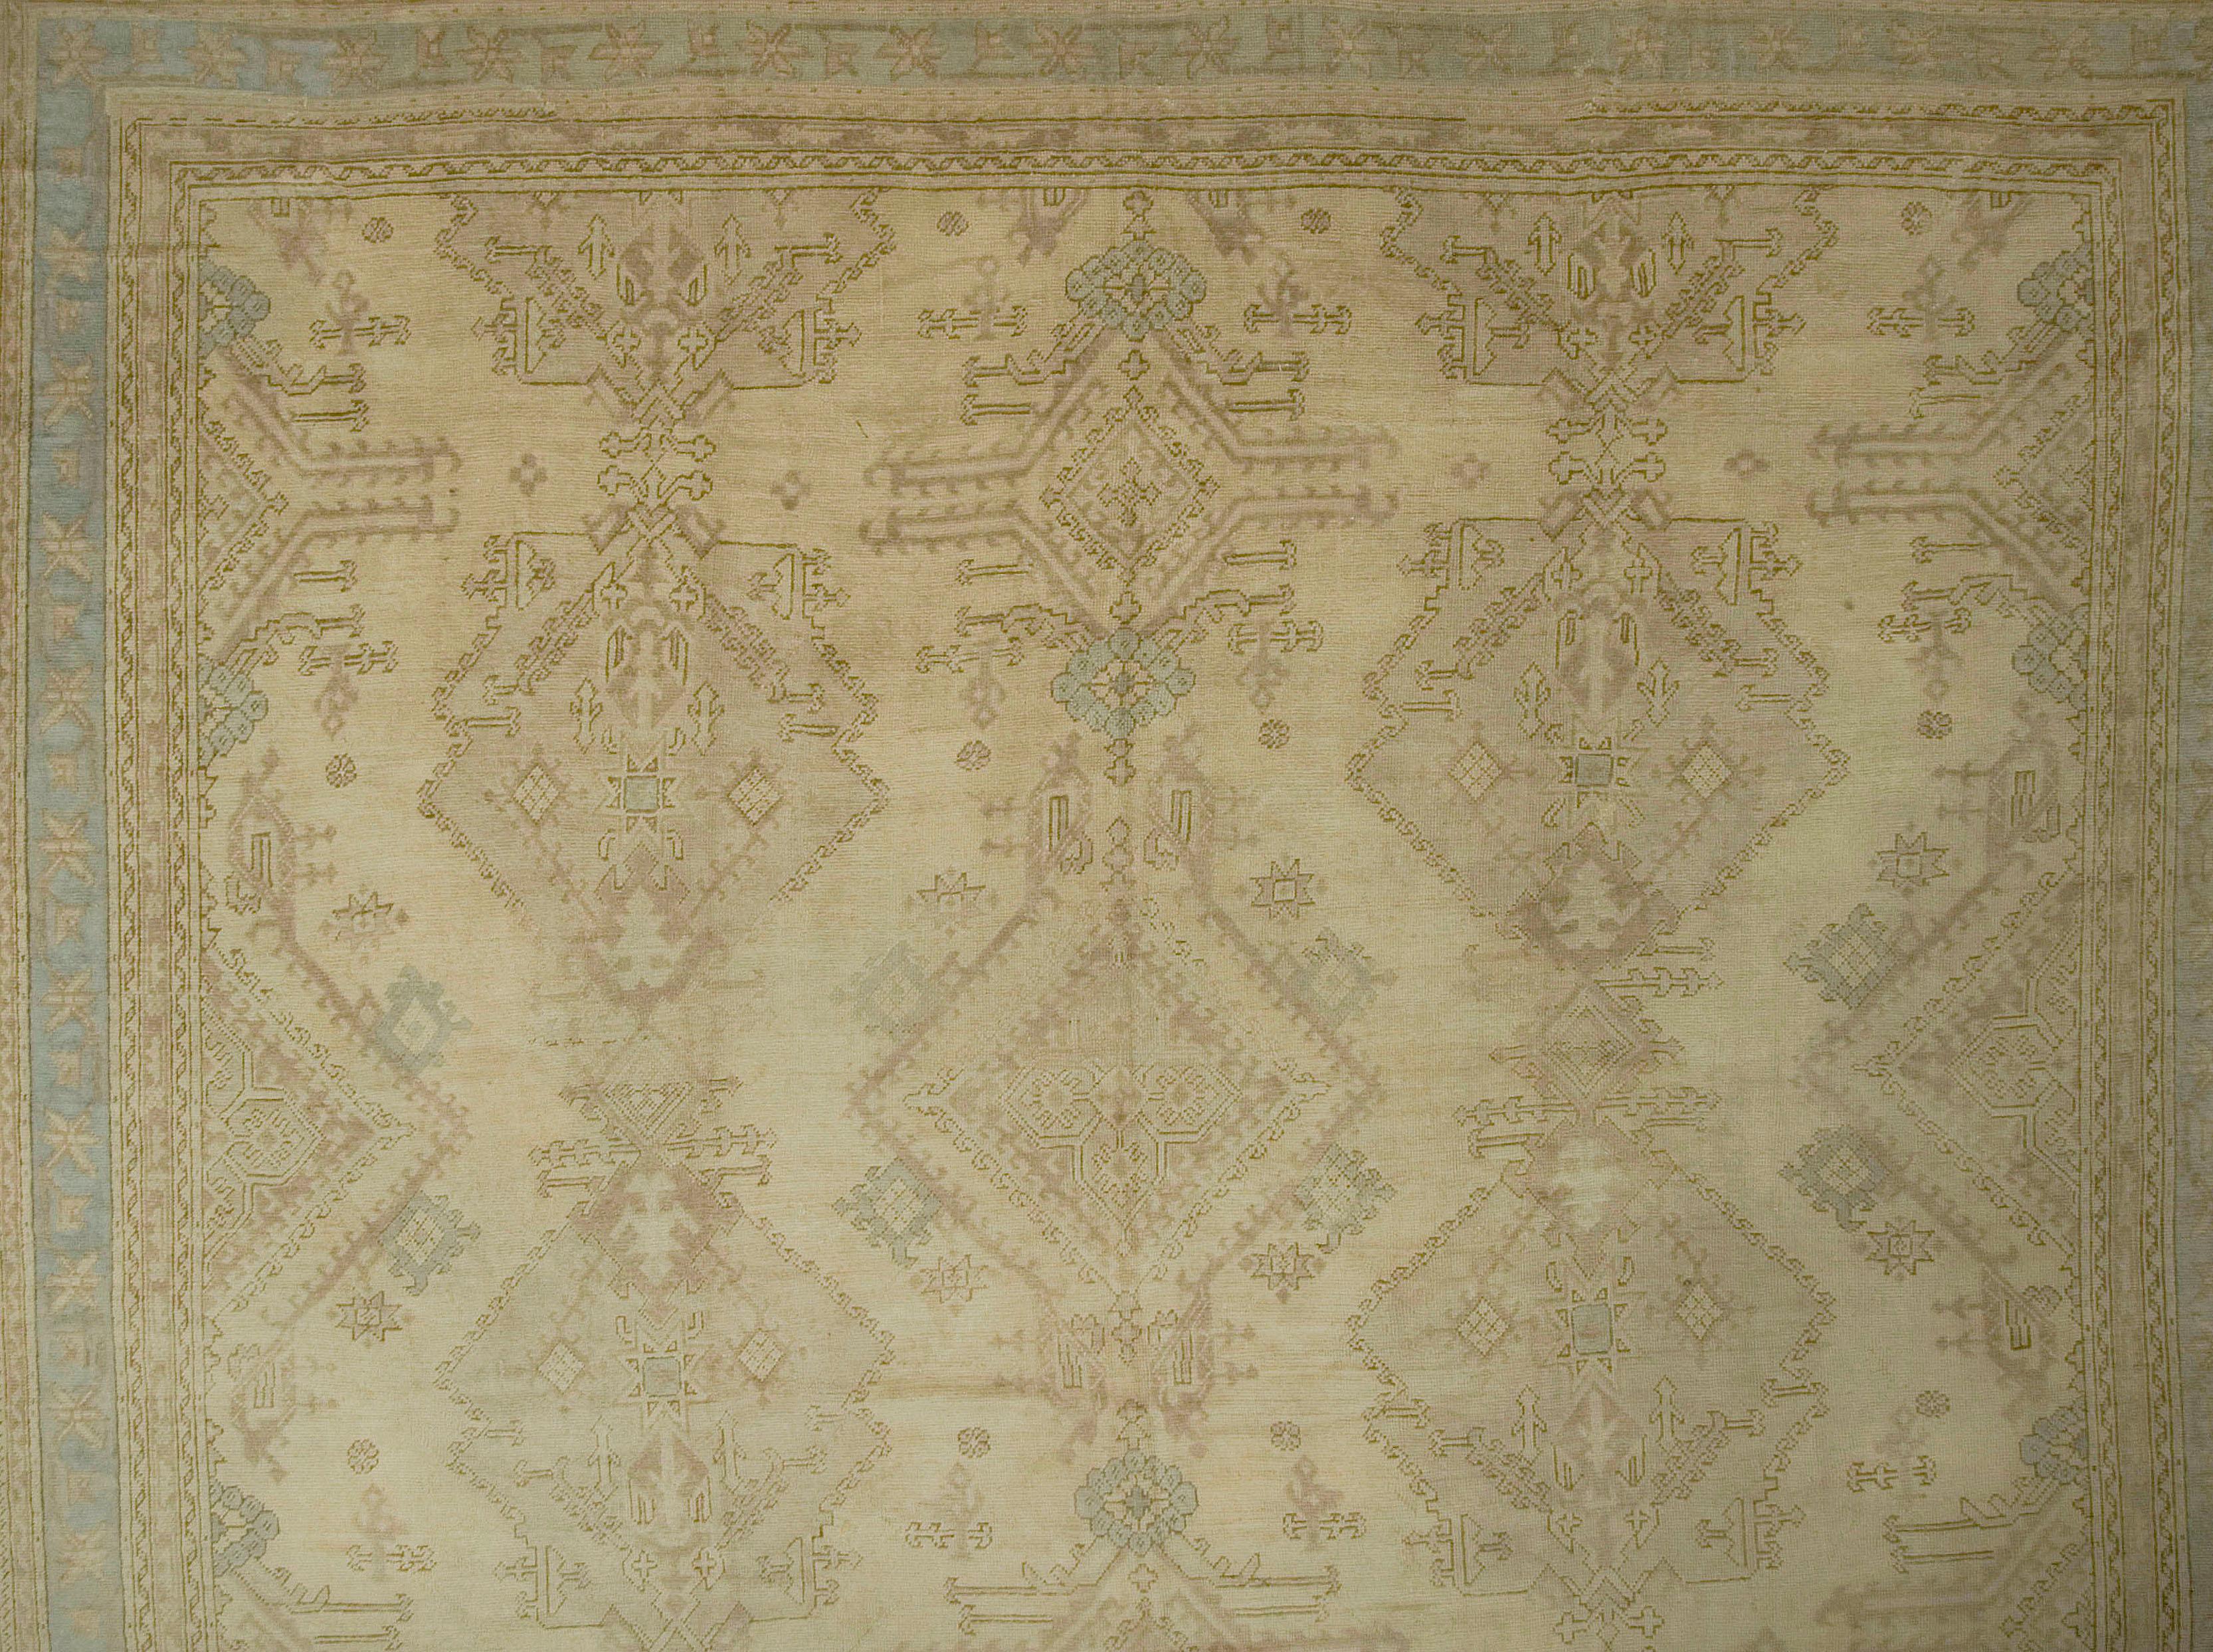 Übergroßer antiker türkischer Oushak-Teppich. Maße: 15ft 02in x 21ft 07in. Dieses Muster auf cremefarbenem Grund stammt direkt von den Oushaks des 18. Jahrhunderts ab. Dreieinhalb Säulen mit komplexen, riesigen Palmetten und kunstvollen Rautenformen